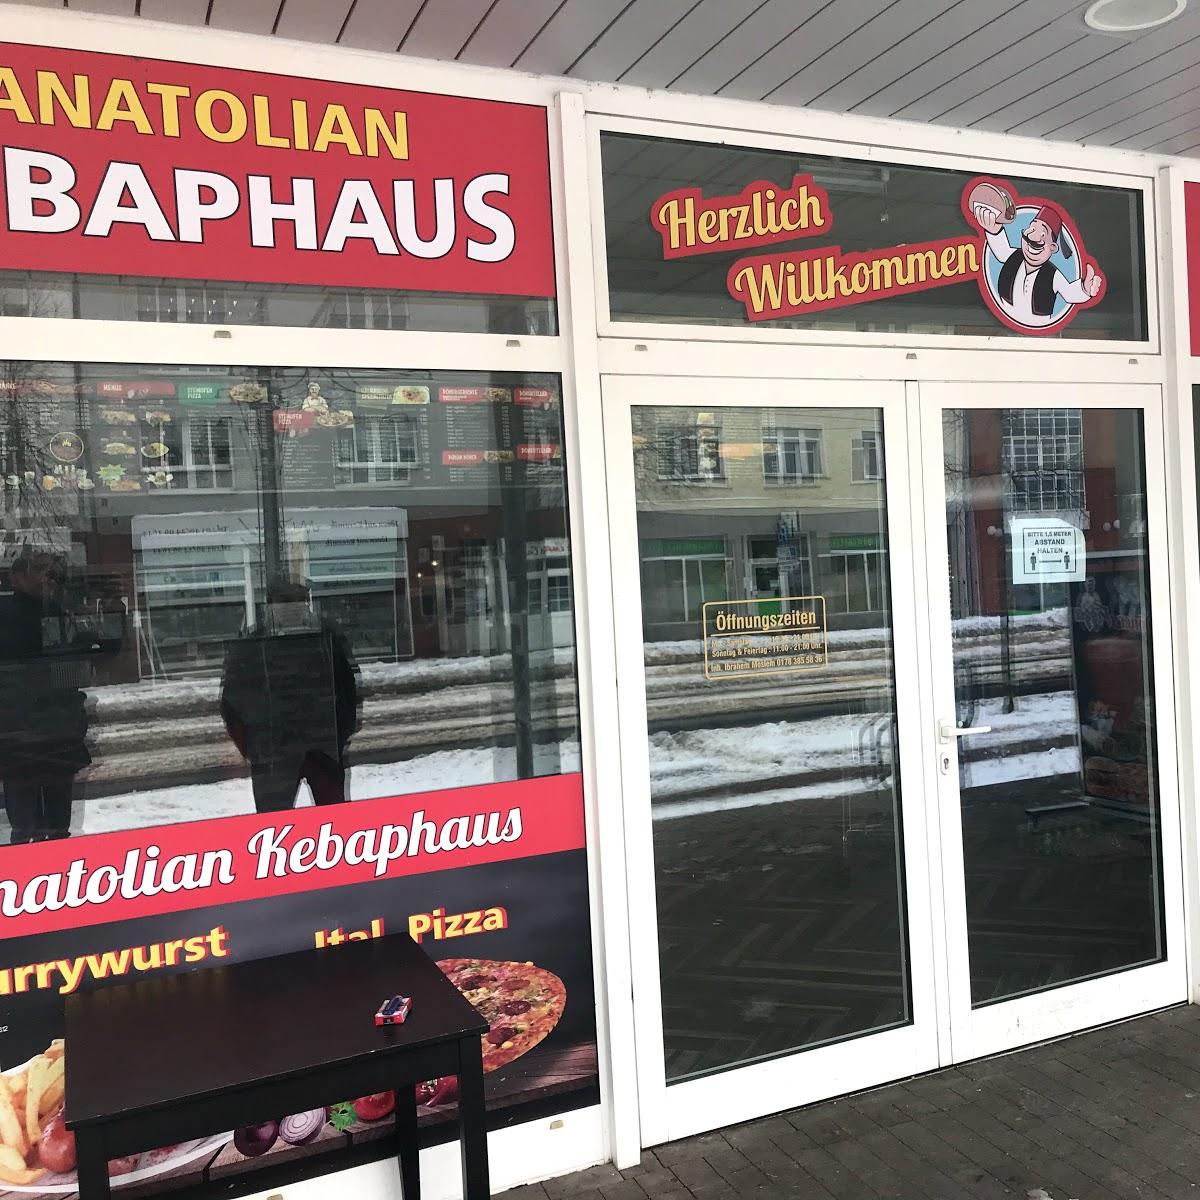 Restaurant "Anatolian Kebaphaus" in Dessau-Roßlau